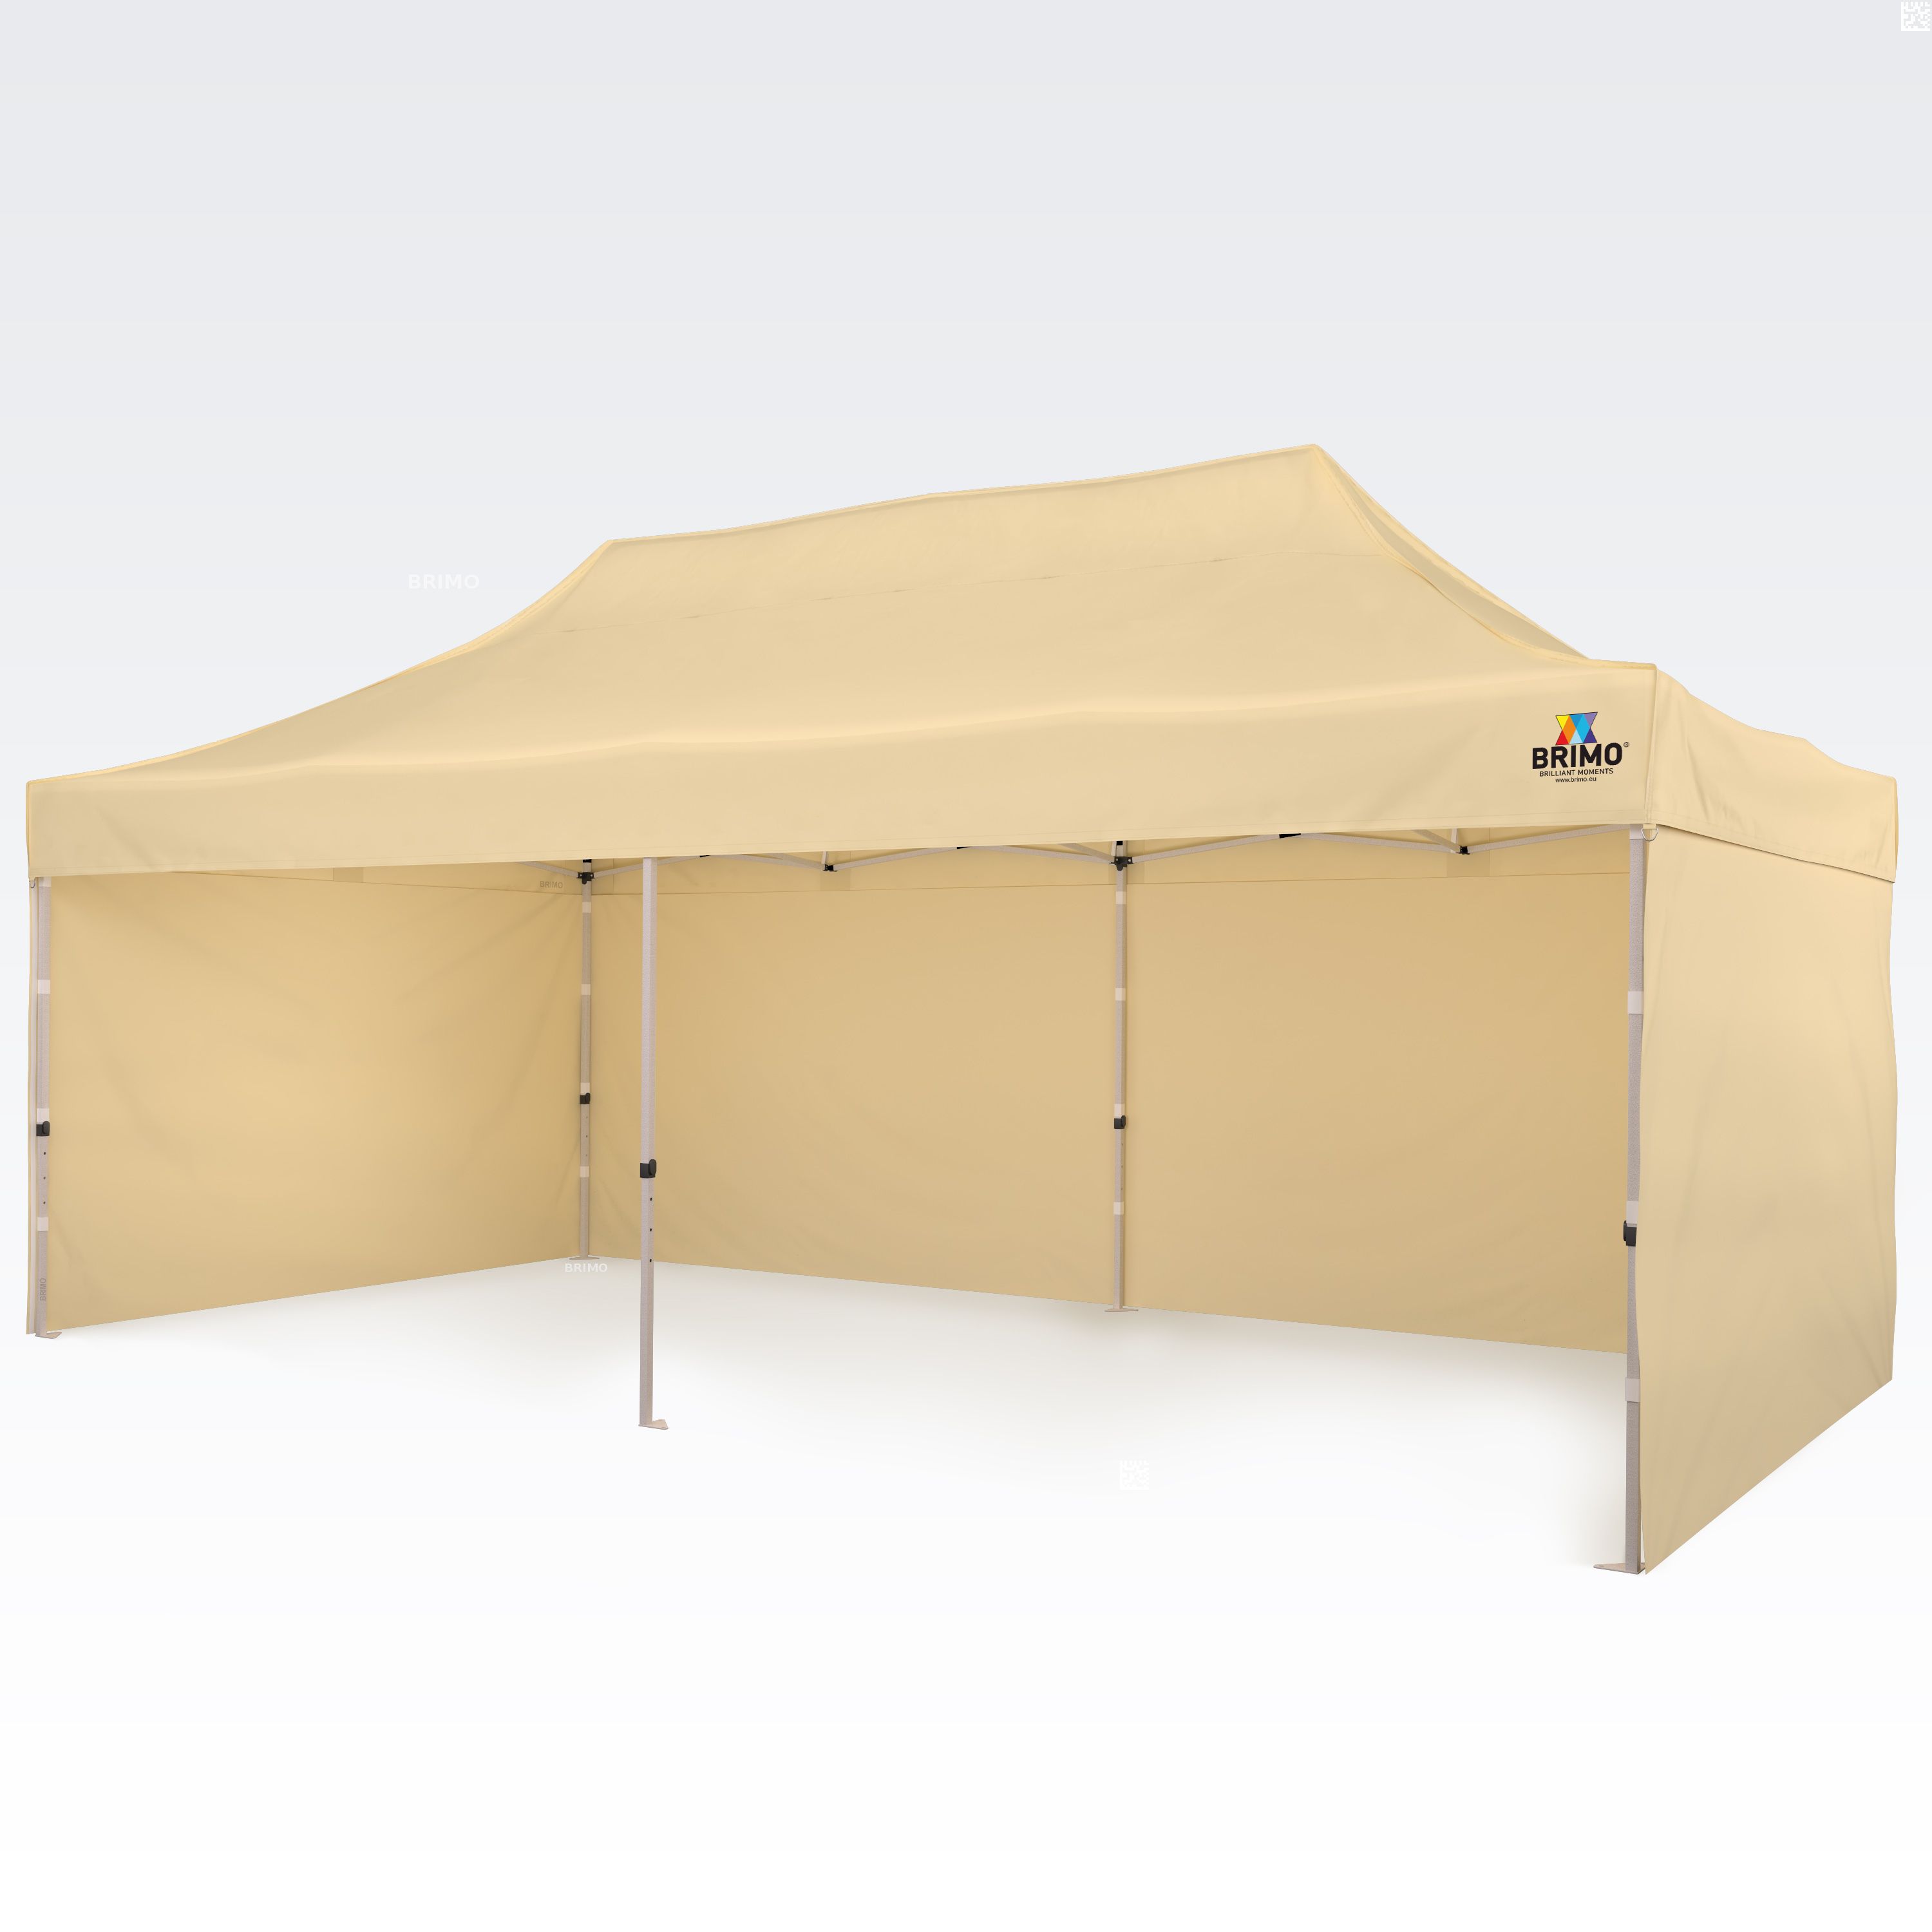 BRIMO Tente de marché 3x6m Gratuit : 3pc parois pleines, 12 sardines de tente et housse de protection + Garantie de 5 ans! beige